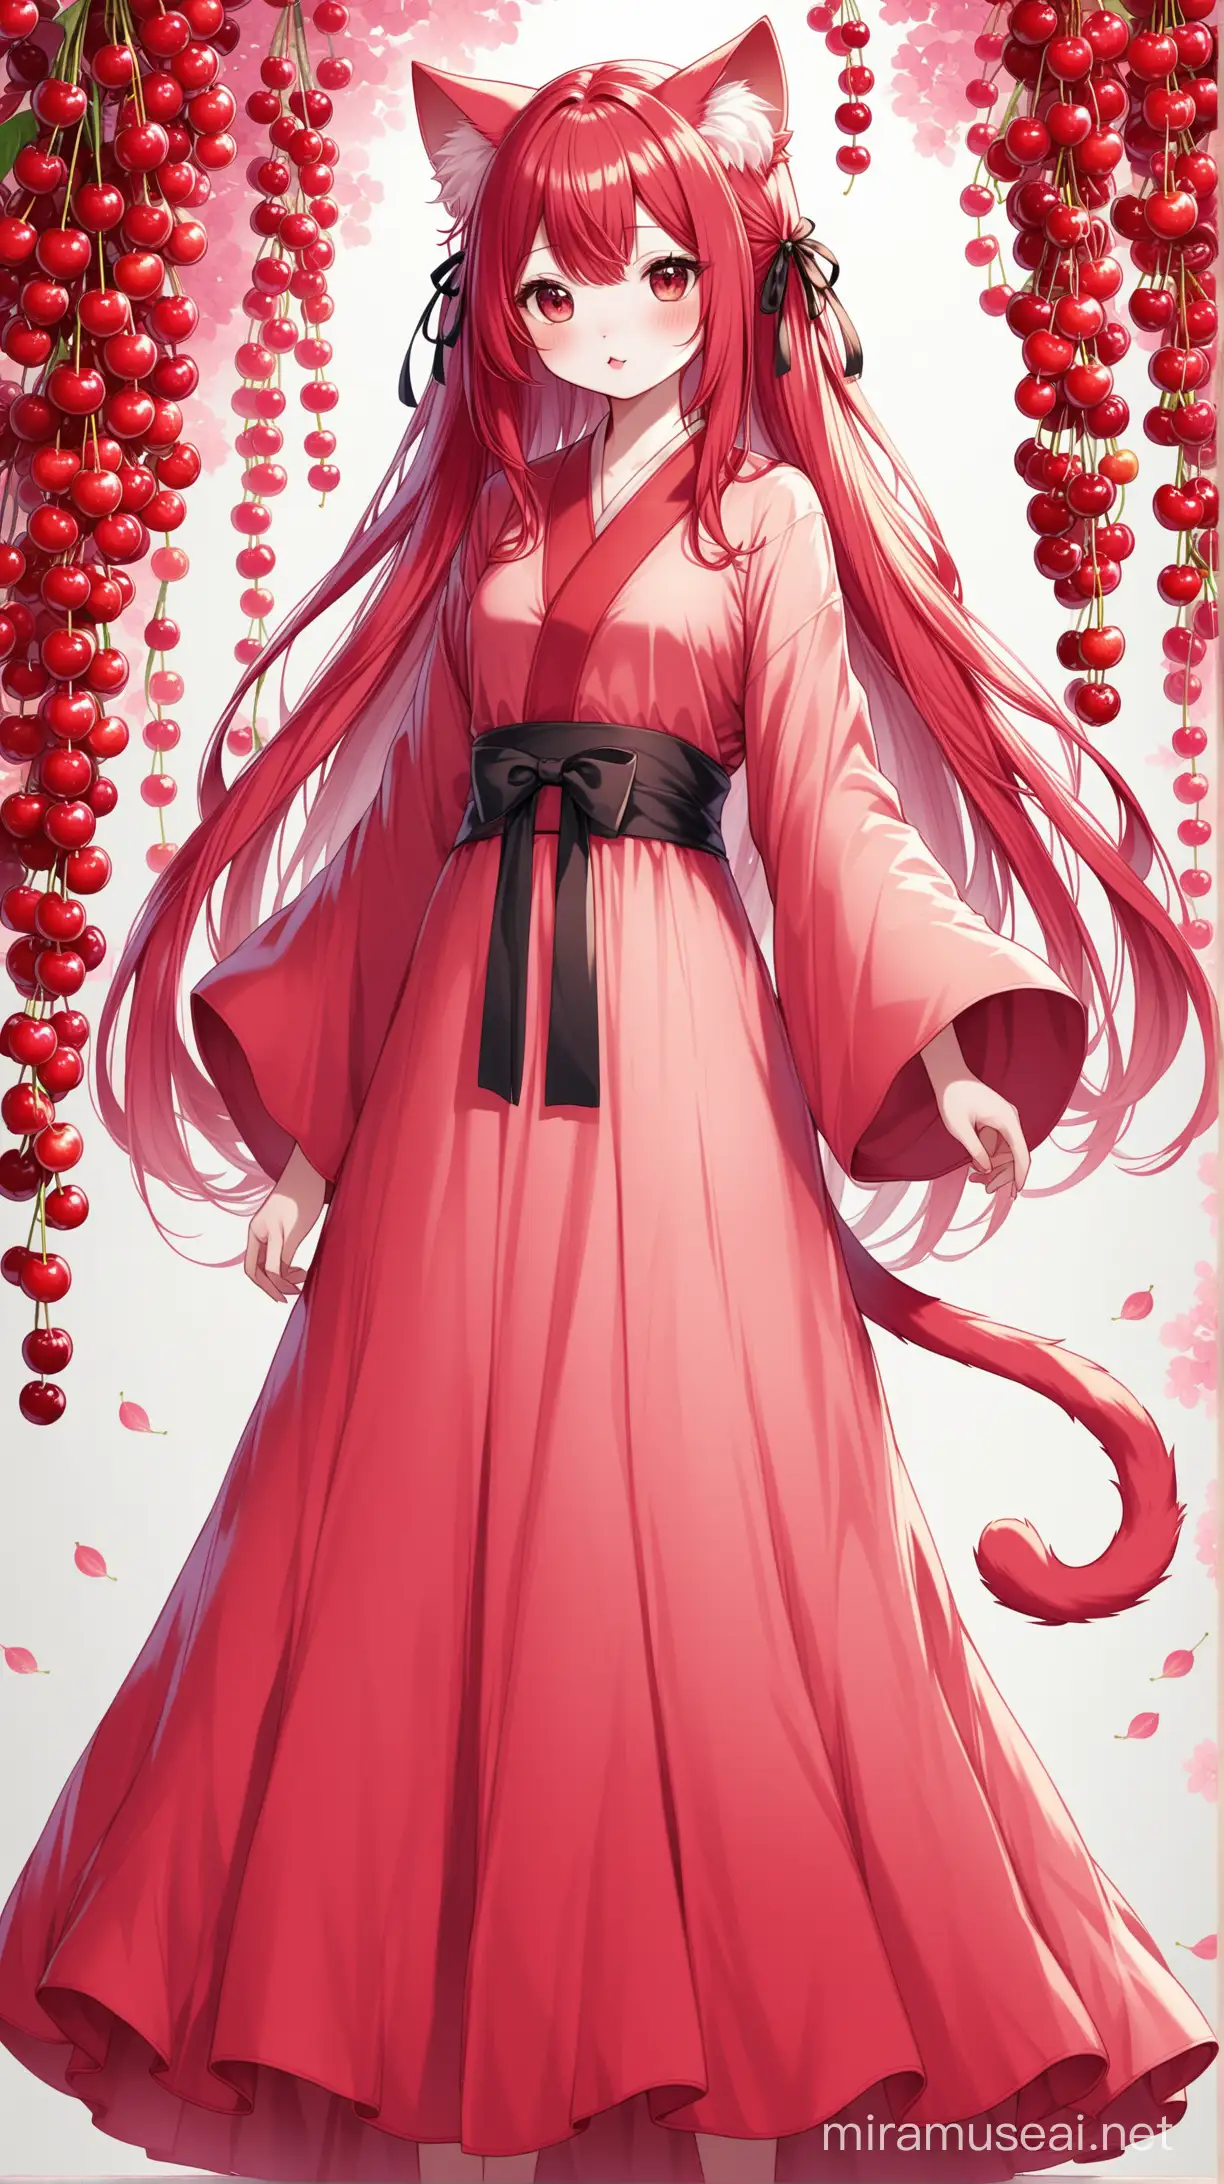 un chat humanoïde comme cerise au cheveux de la couleur du fruit cerise, porte de longs vêtements